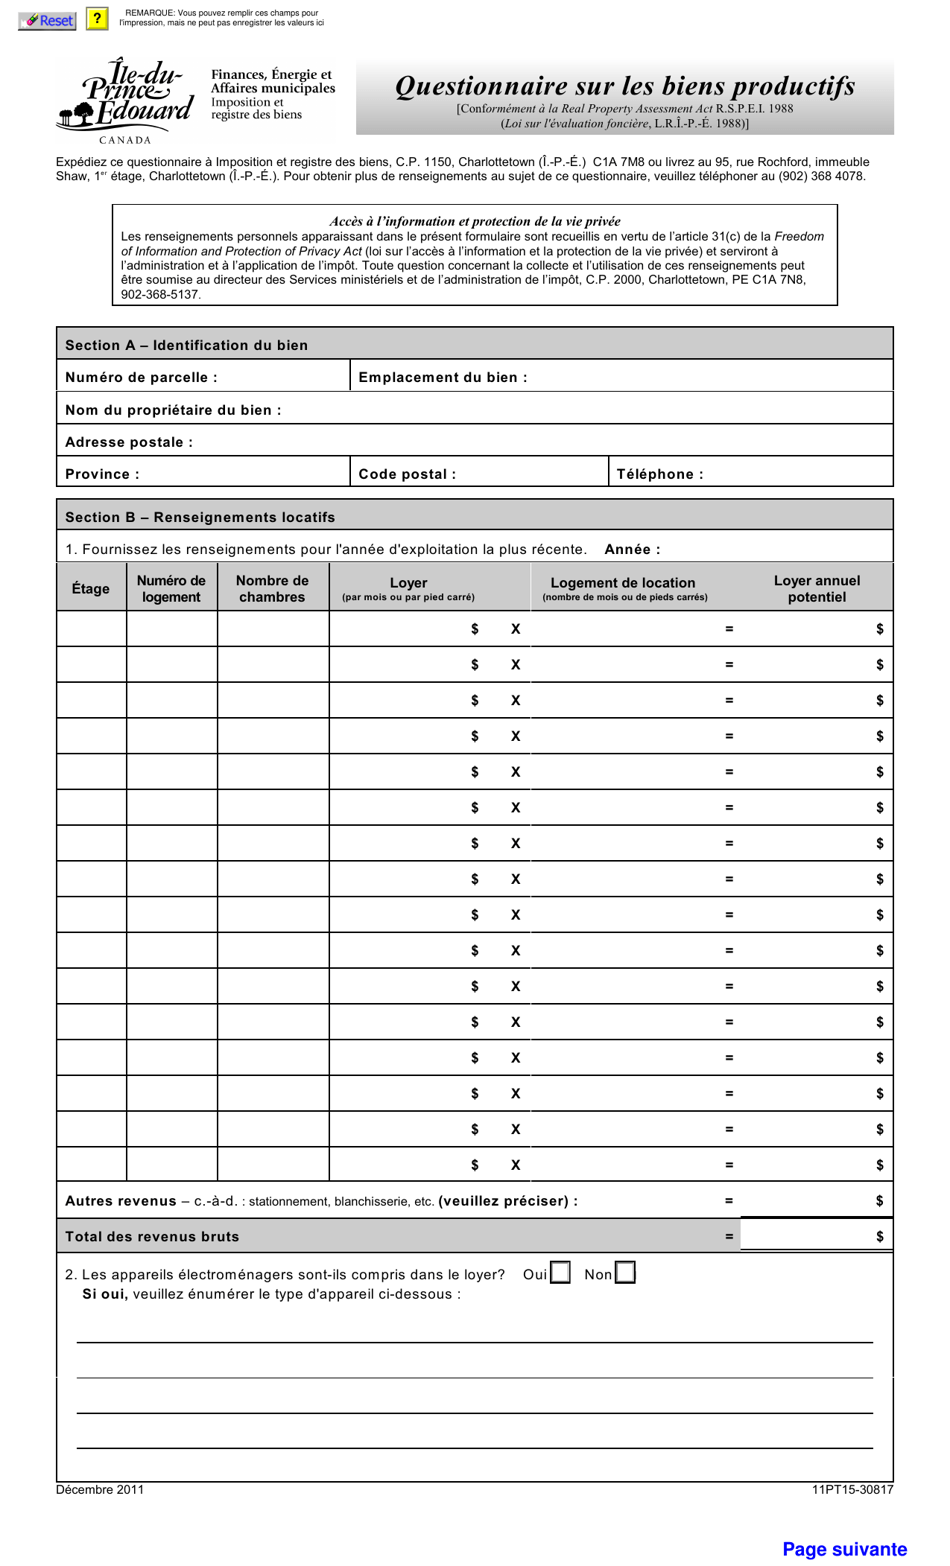 Forme 11PT15-30817 Questionnaire Sur Les Biens Productifs - Prince Edward Island, Canada (French), Page 1